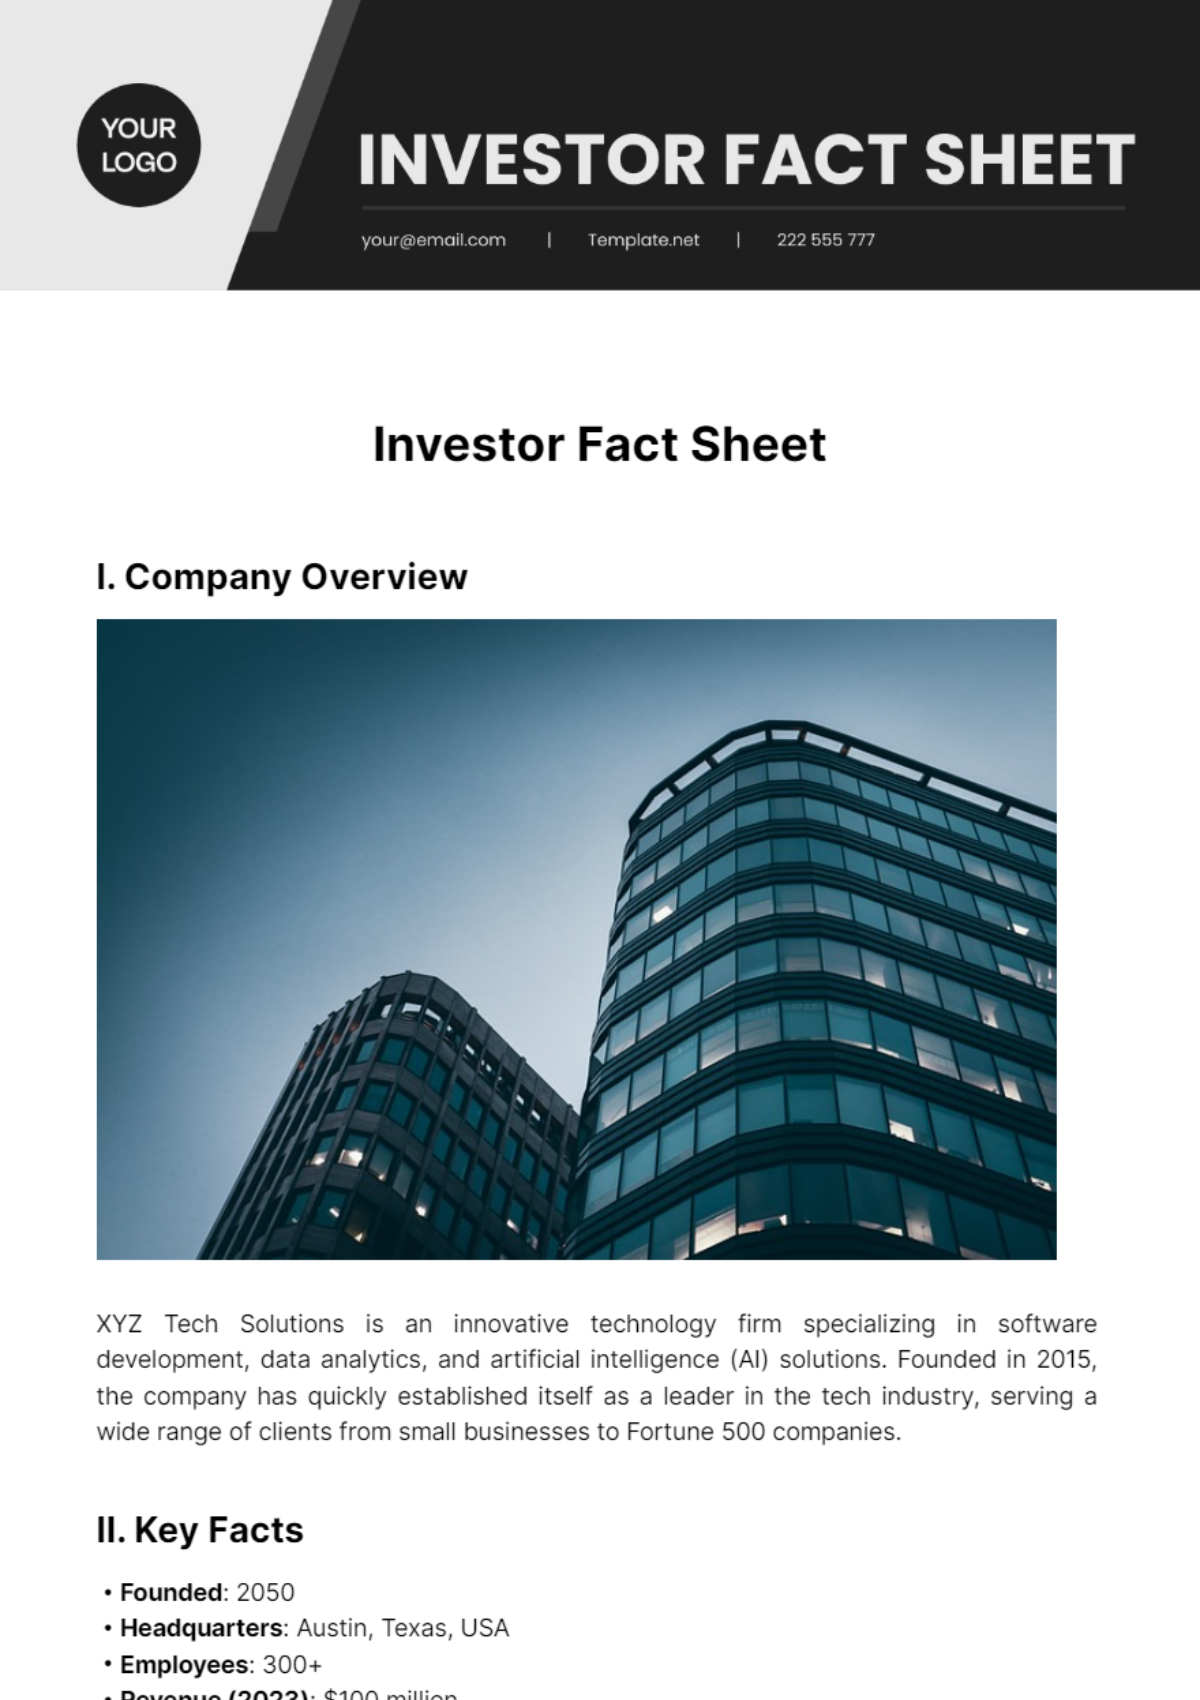 Investor Fact Sheet Template